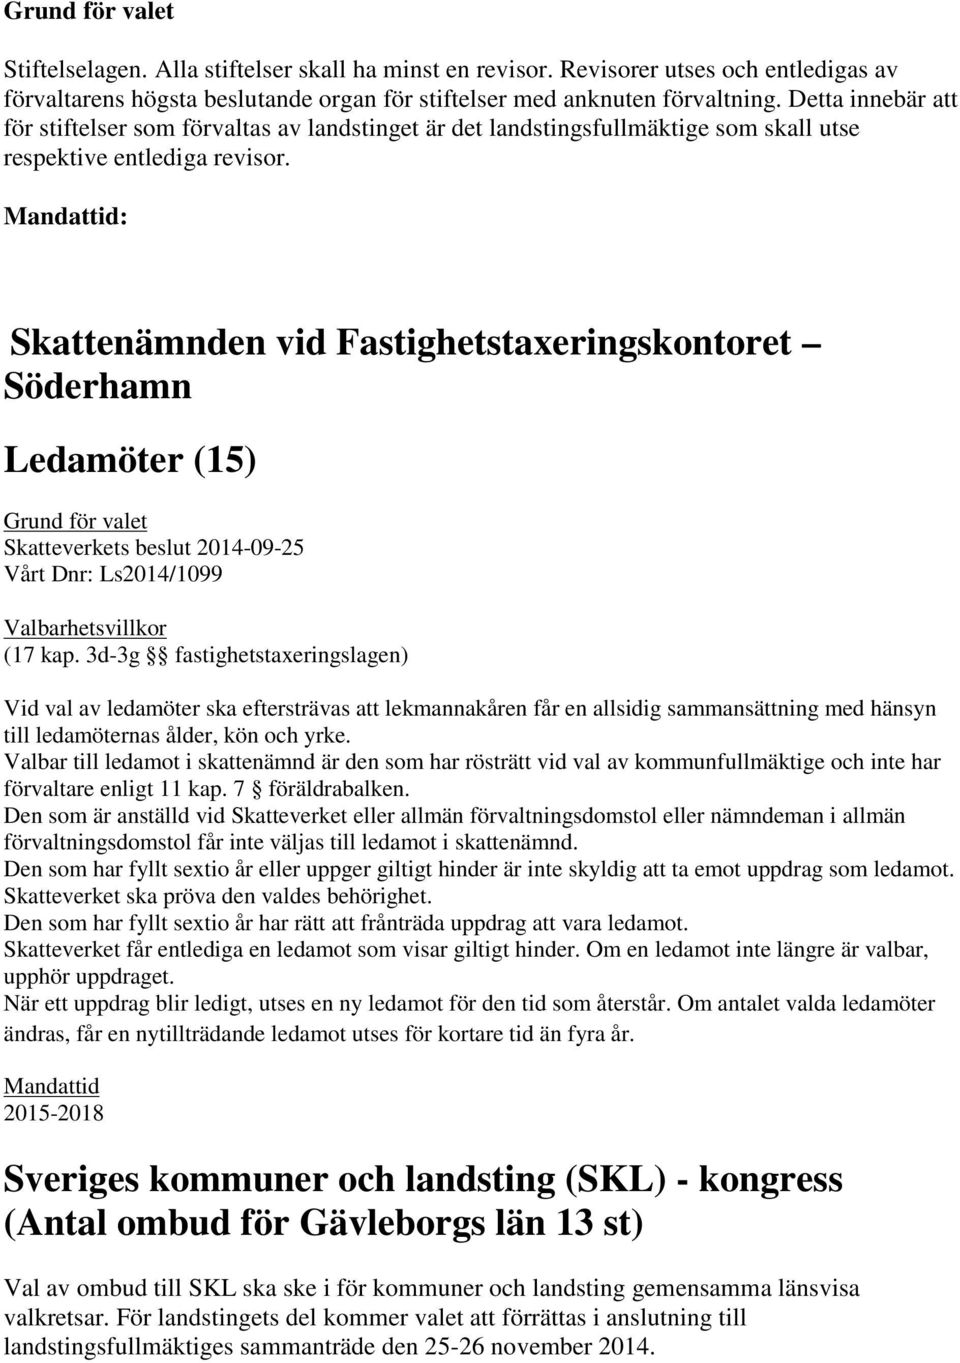 Mandattid: Skattenämnden vid Fastighetstaxeringskontoret Söderhamn Ledamöter (15) Skatteverkets beslut 2014-09-25 Vårt Dnr: Ls2014/1099 Valbarhetsvillkor (17 kap.